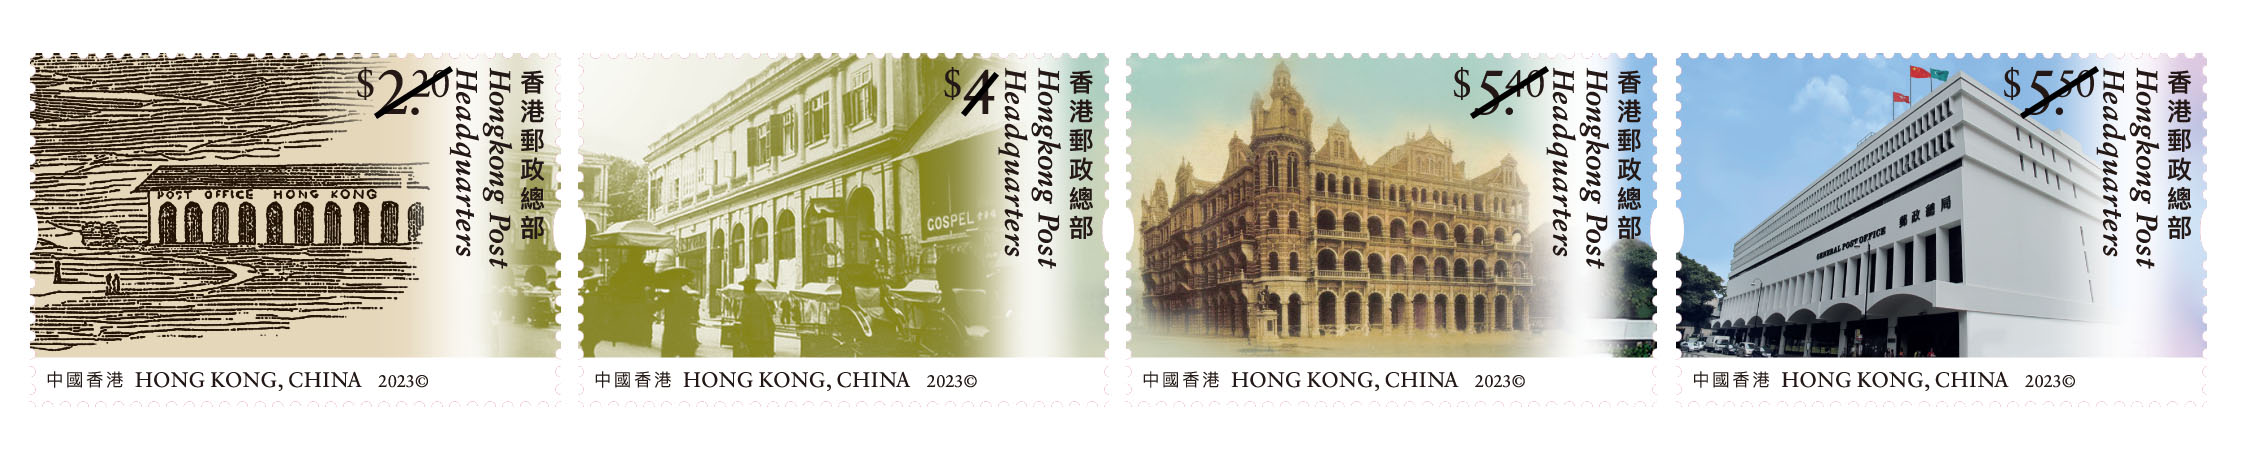 「香港今昔系列:香港郵政總部」